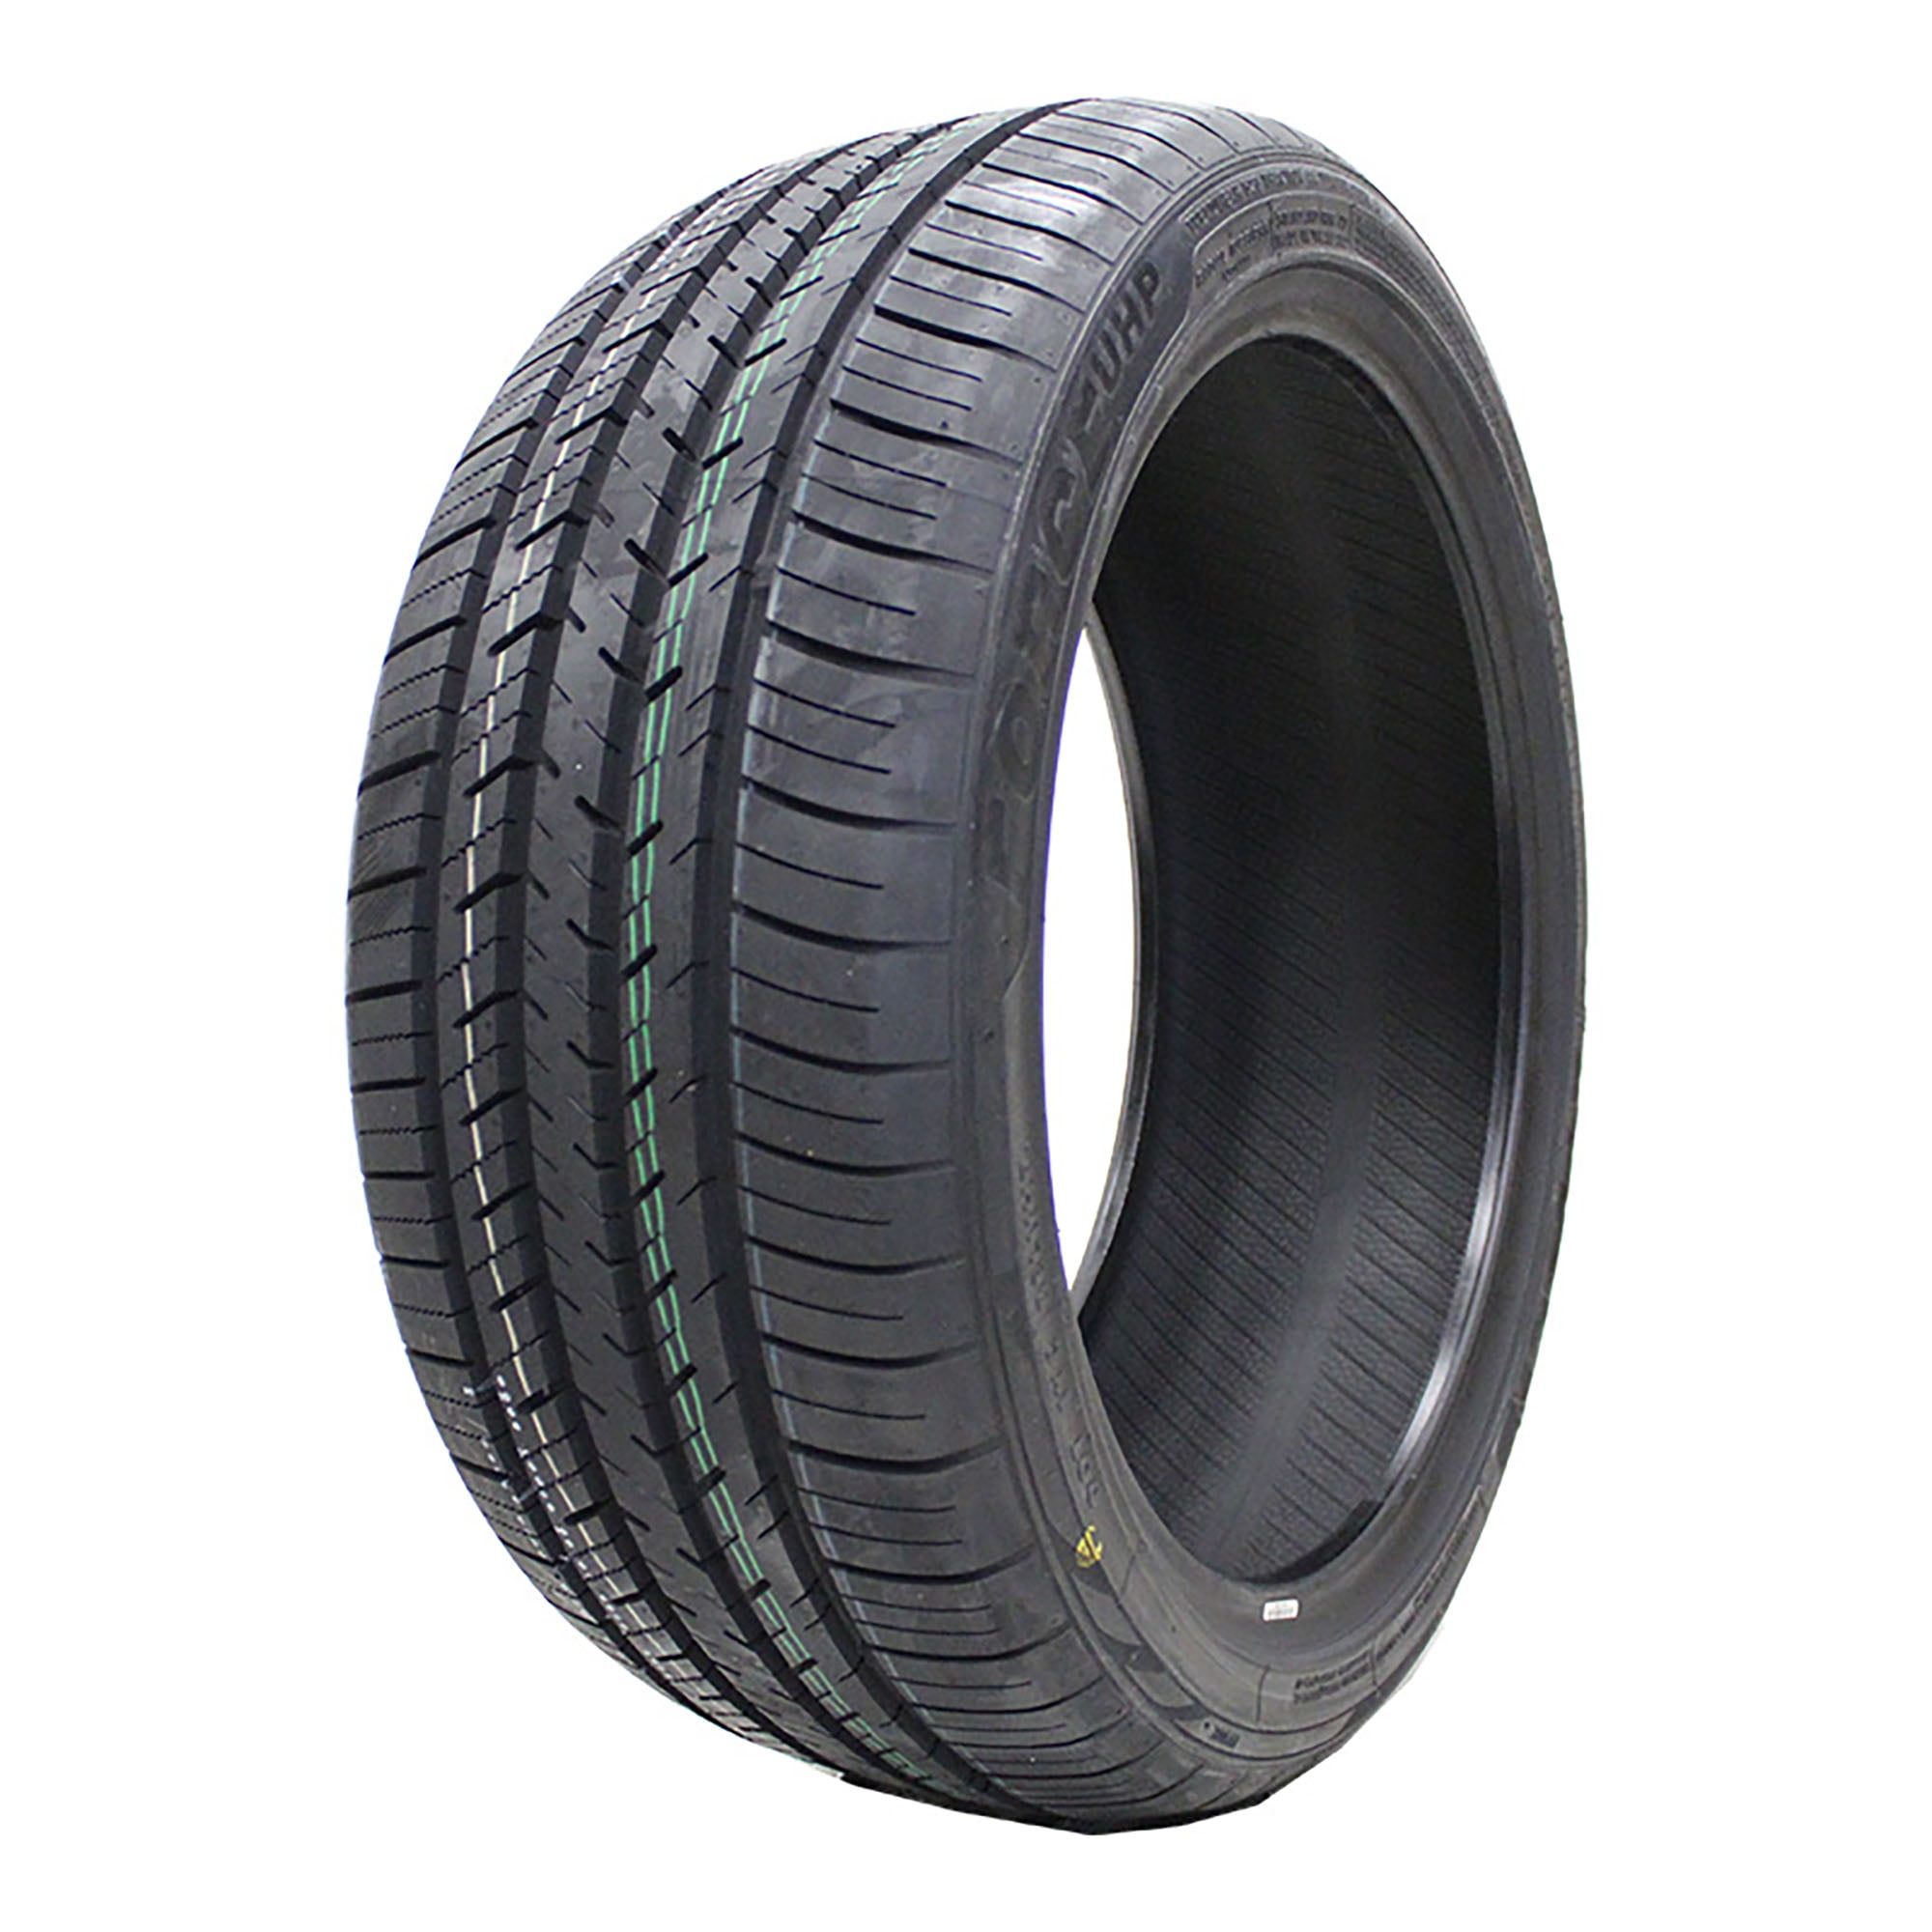 Oferta en Neumáticos Mazzini 225/45 R17 con Entrega gratis »